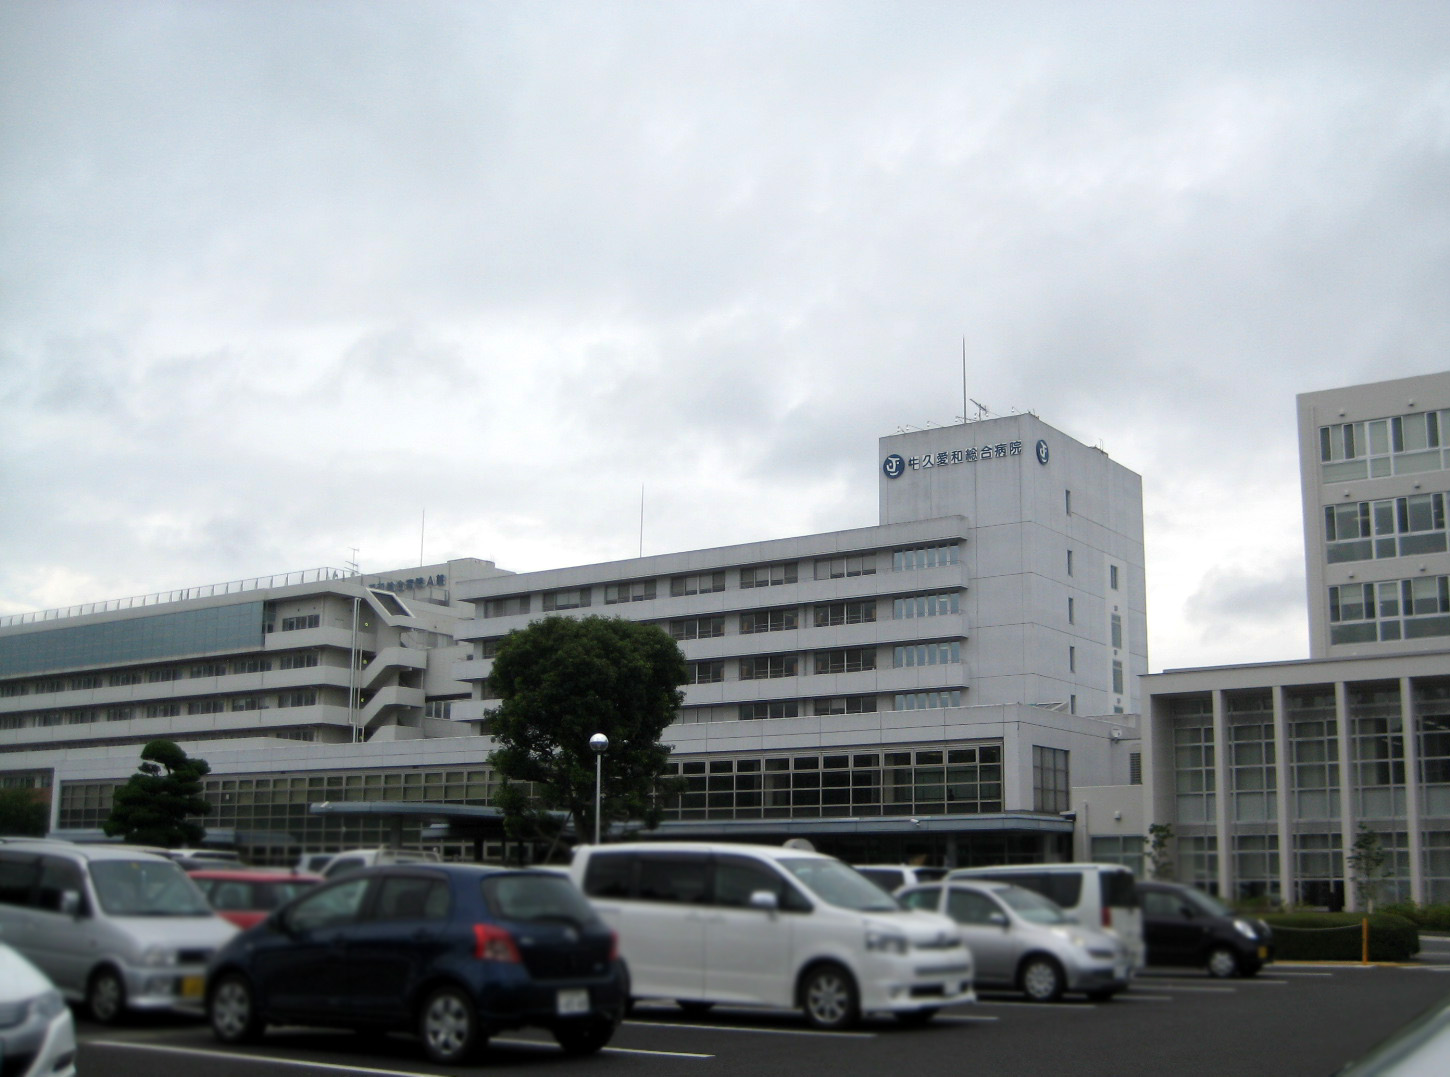 Hospital. Ushikuaiwasogobyoin until the (hospital) 3115m